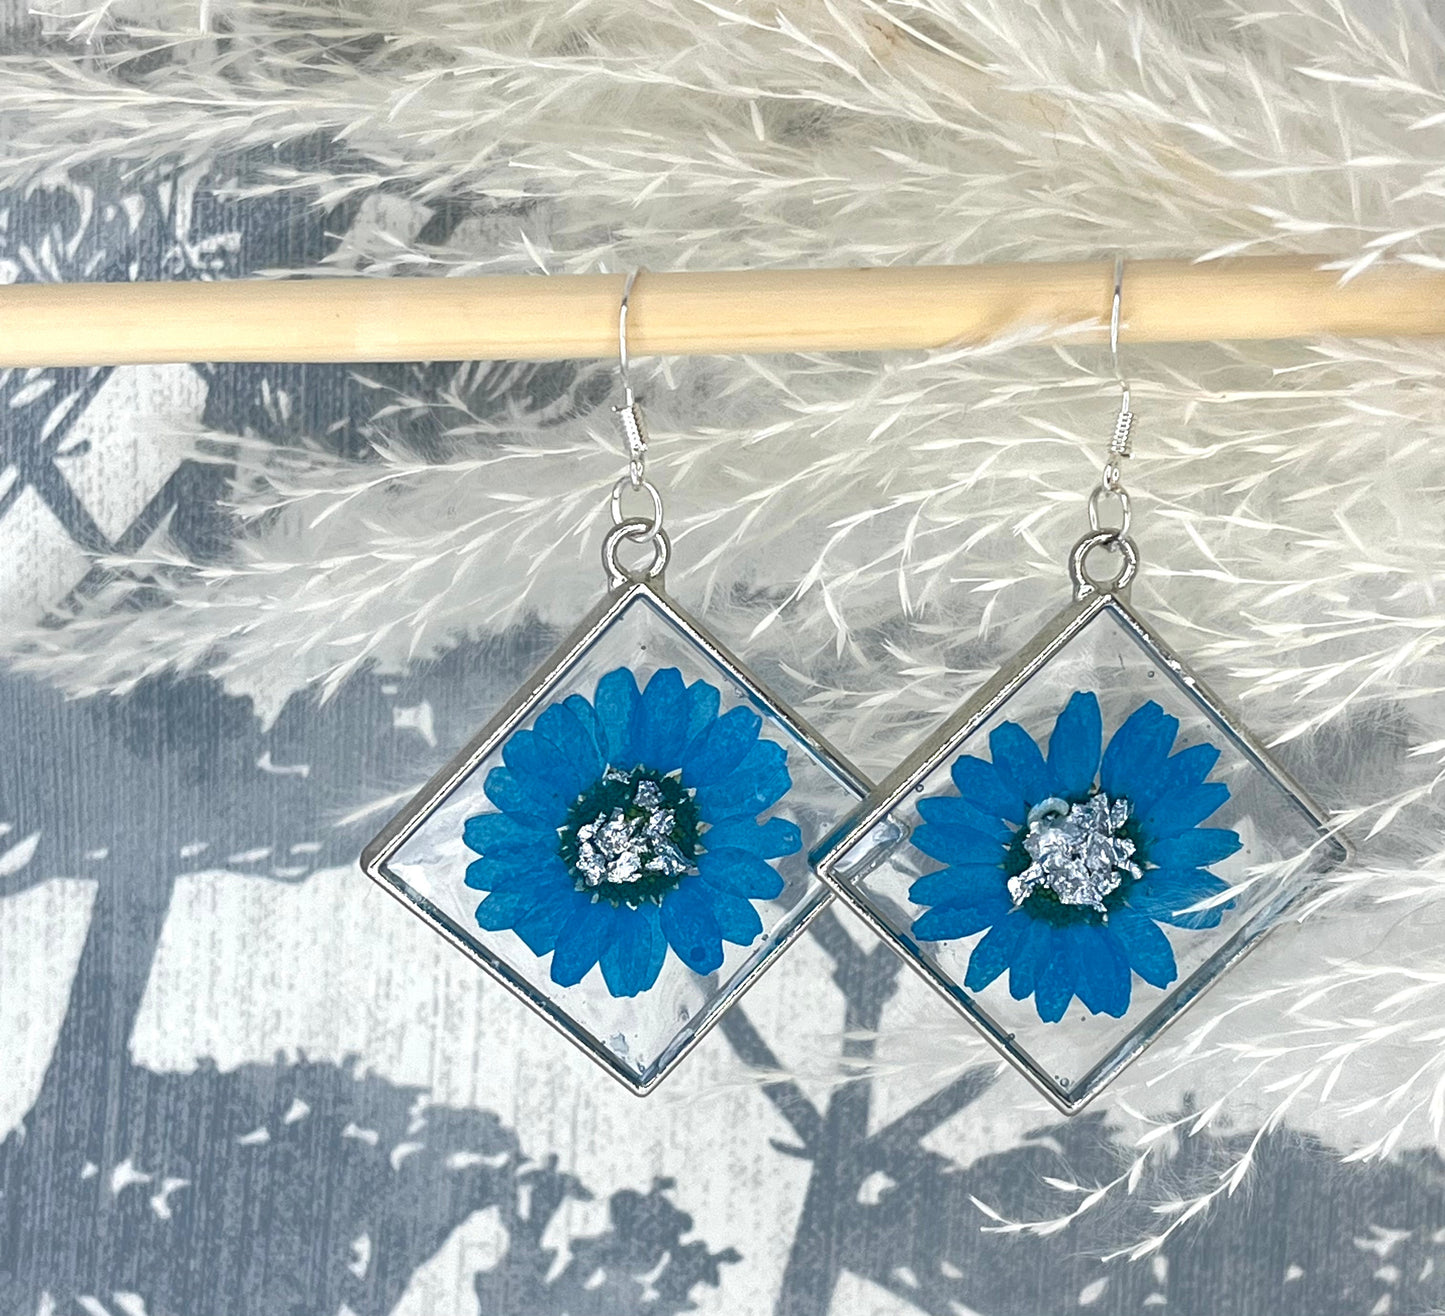 Handmade Blue Flower Diamond Resin Earrings